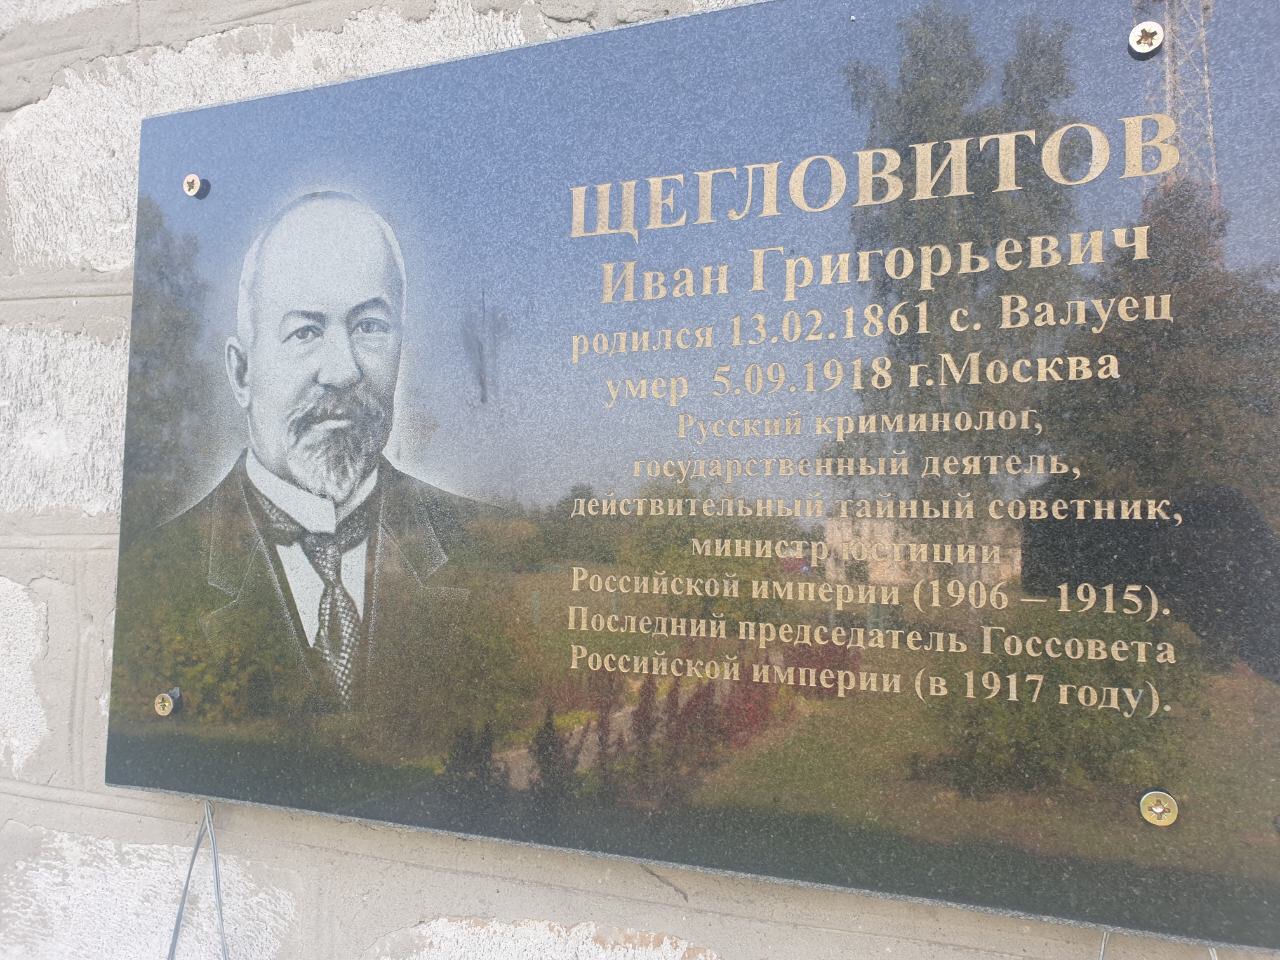 Прокурор Брянской области инициировал установку памятника тайному советнику в парке Стародуба